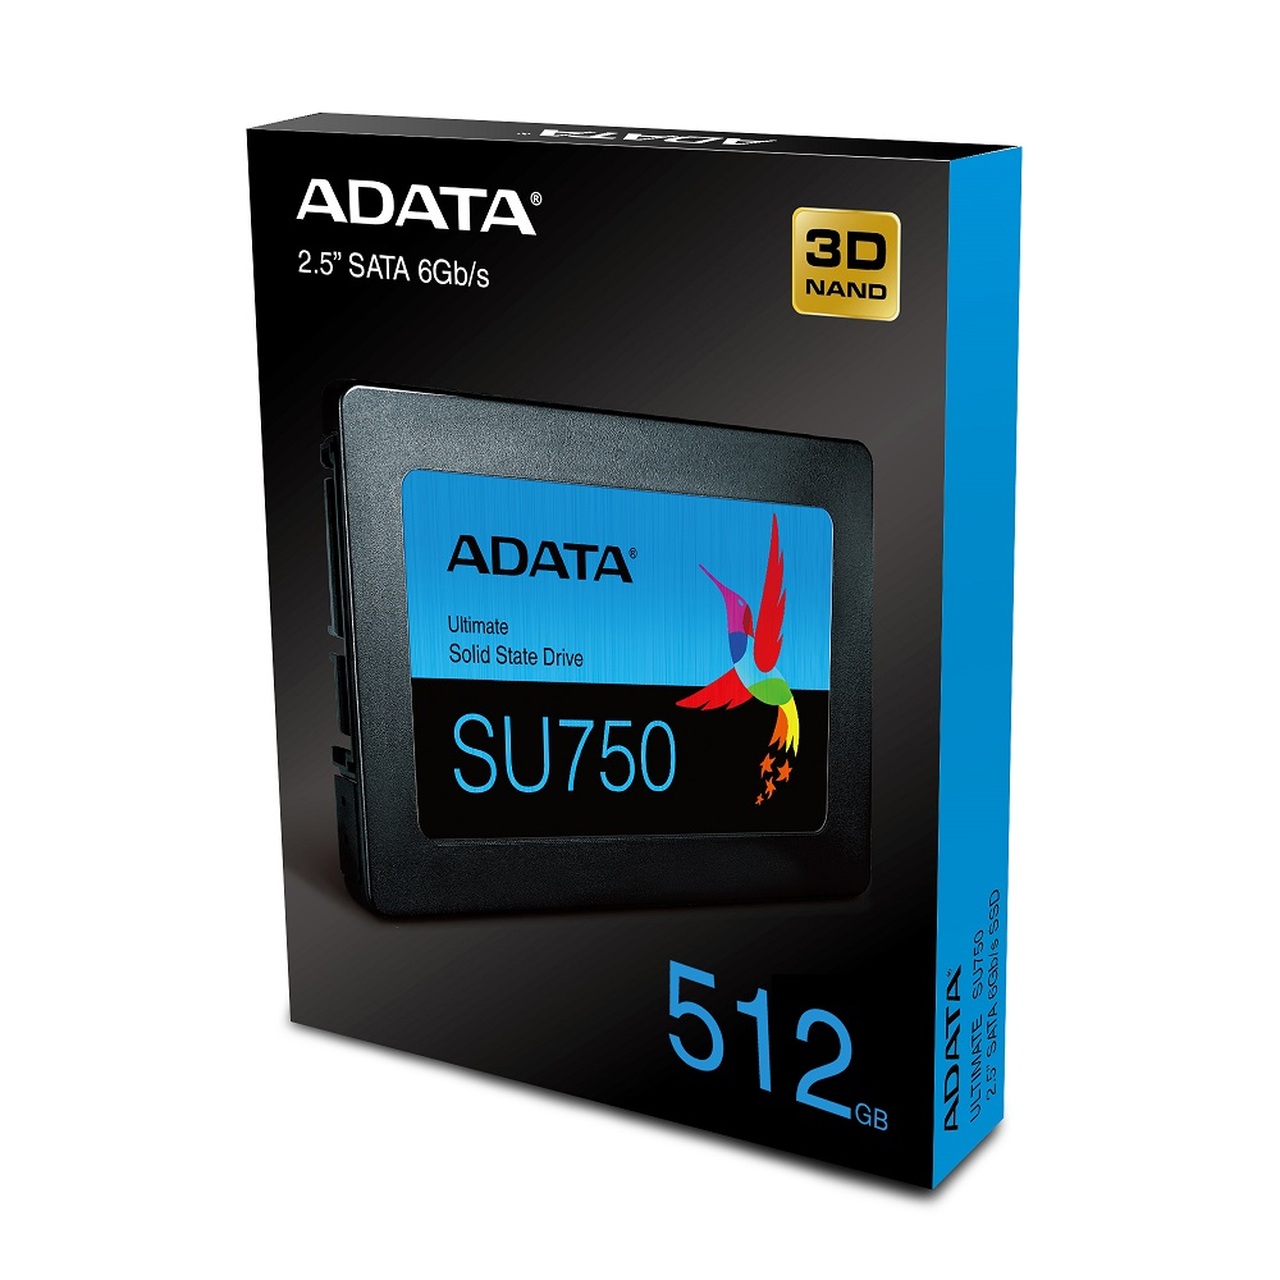 Adata SU-750 512G Internal SSD drive